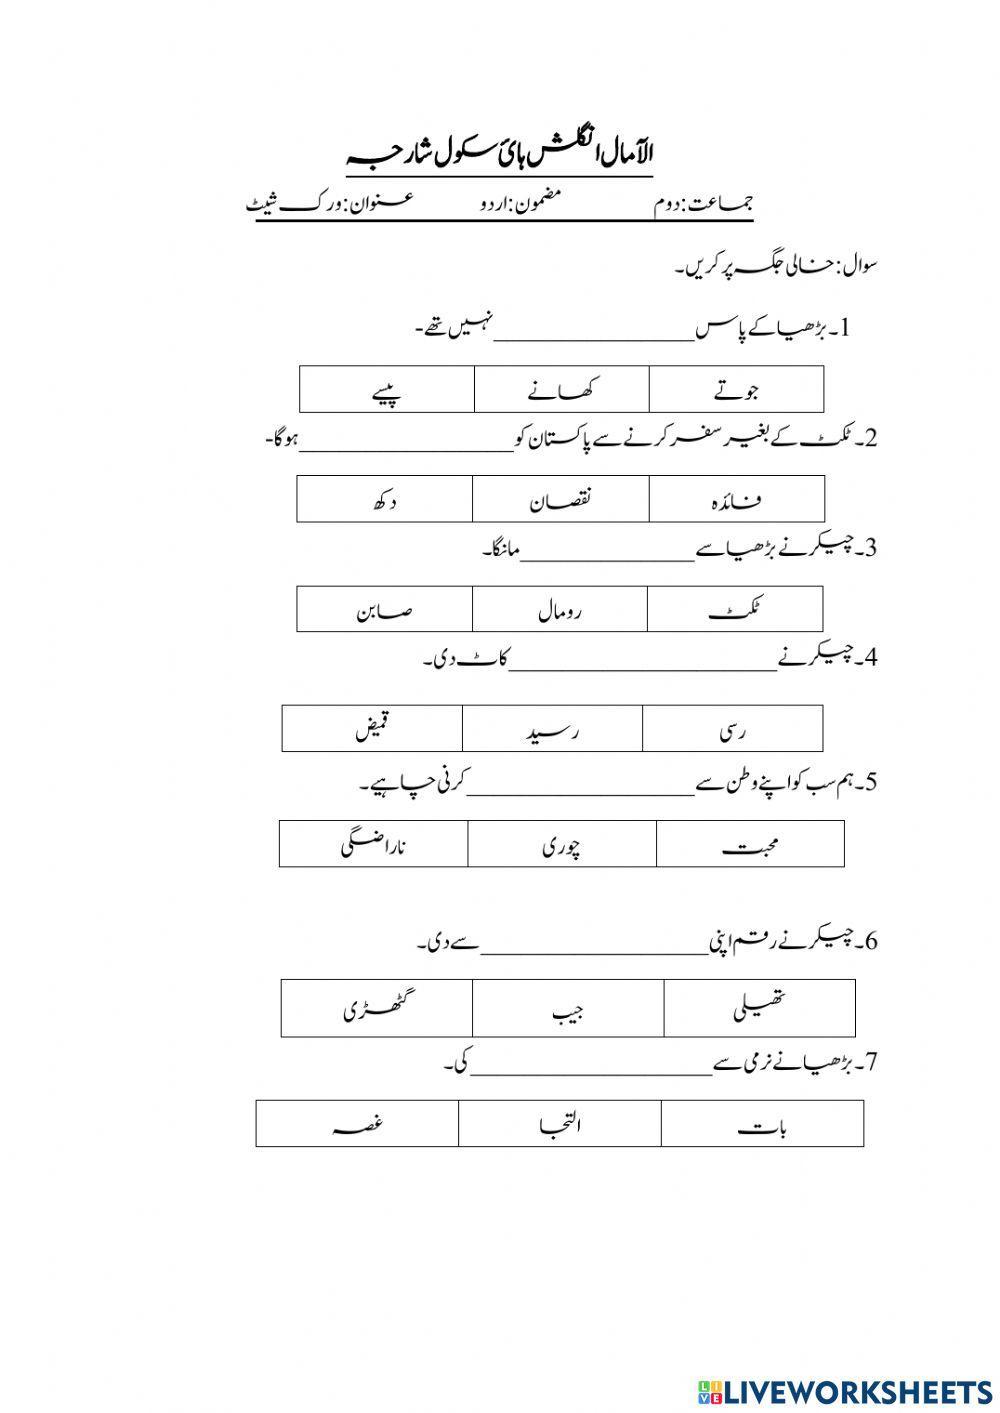 Urdu worksheet1